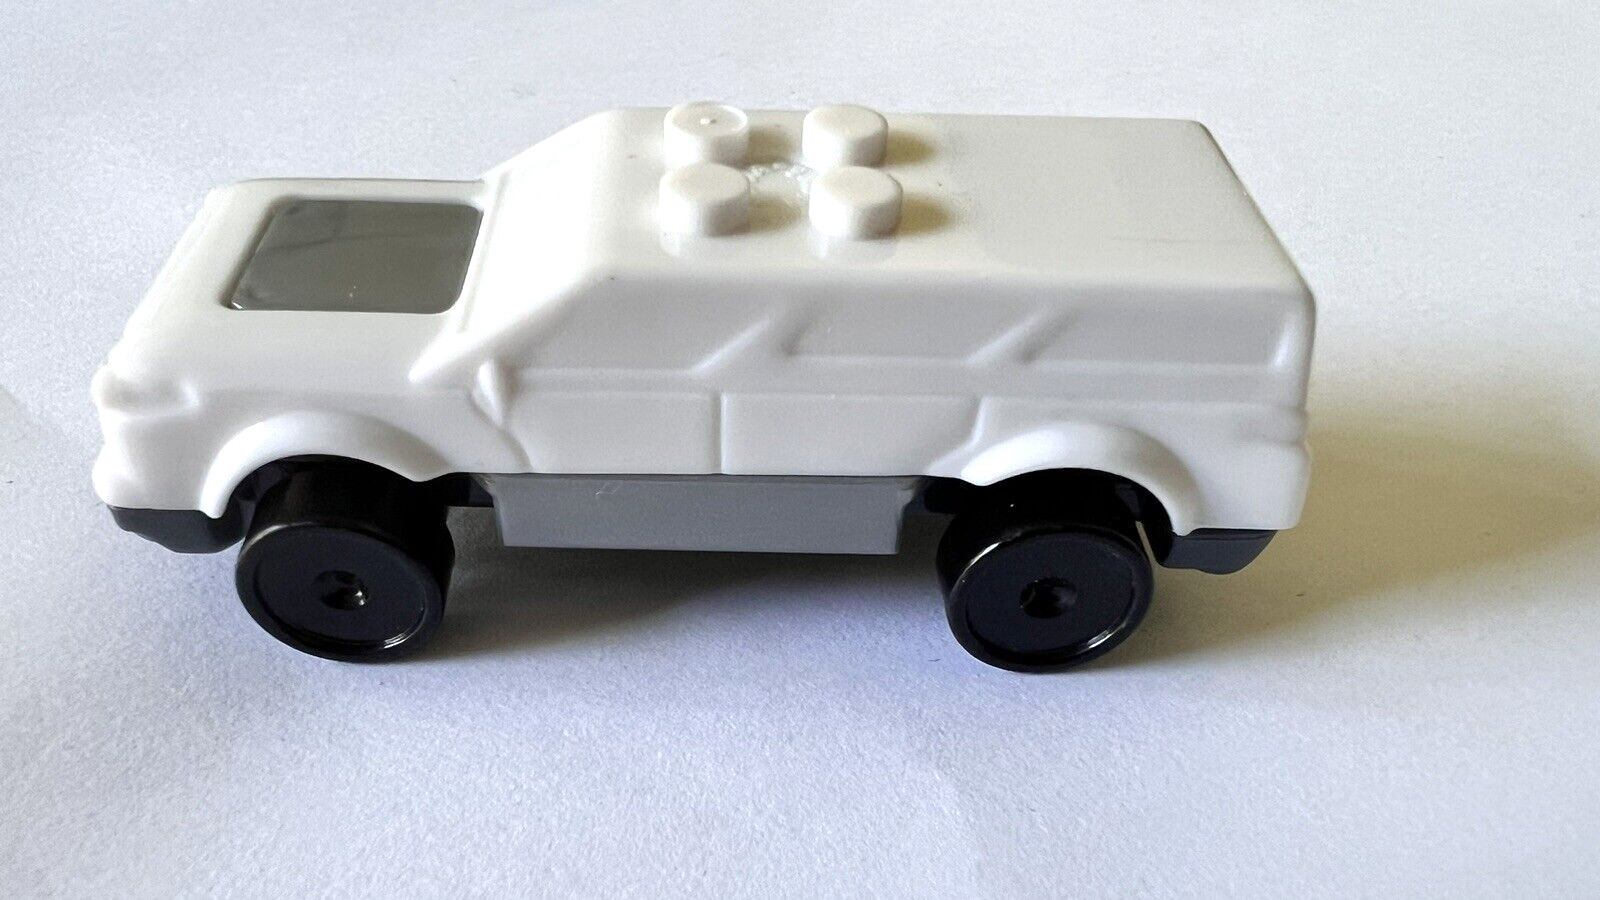 2014 General Mills Cereal MEGA BLOCKS White Car